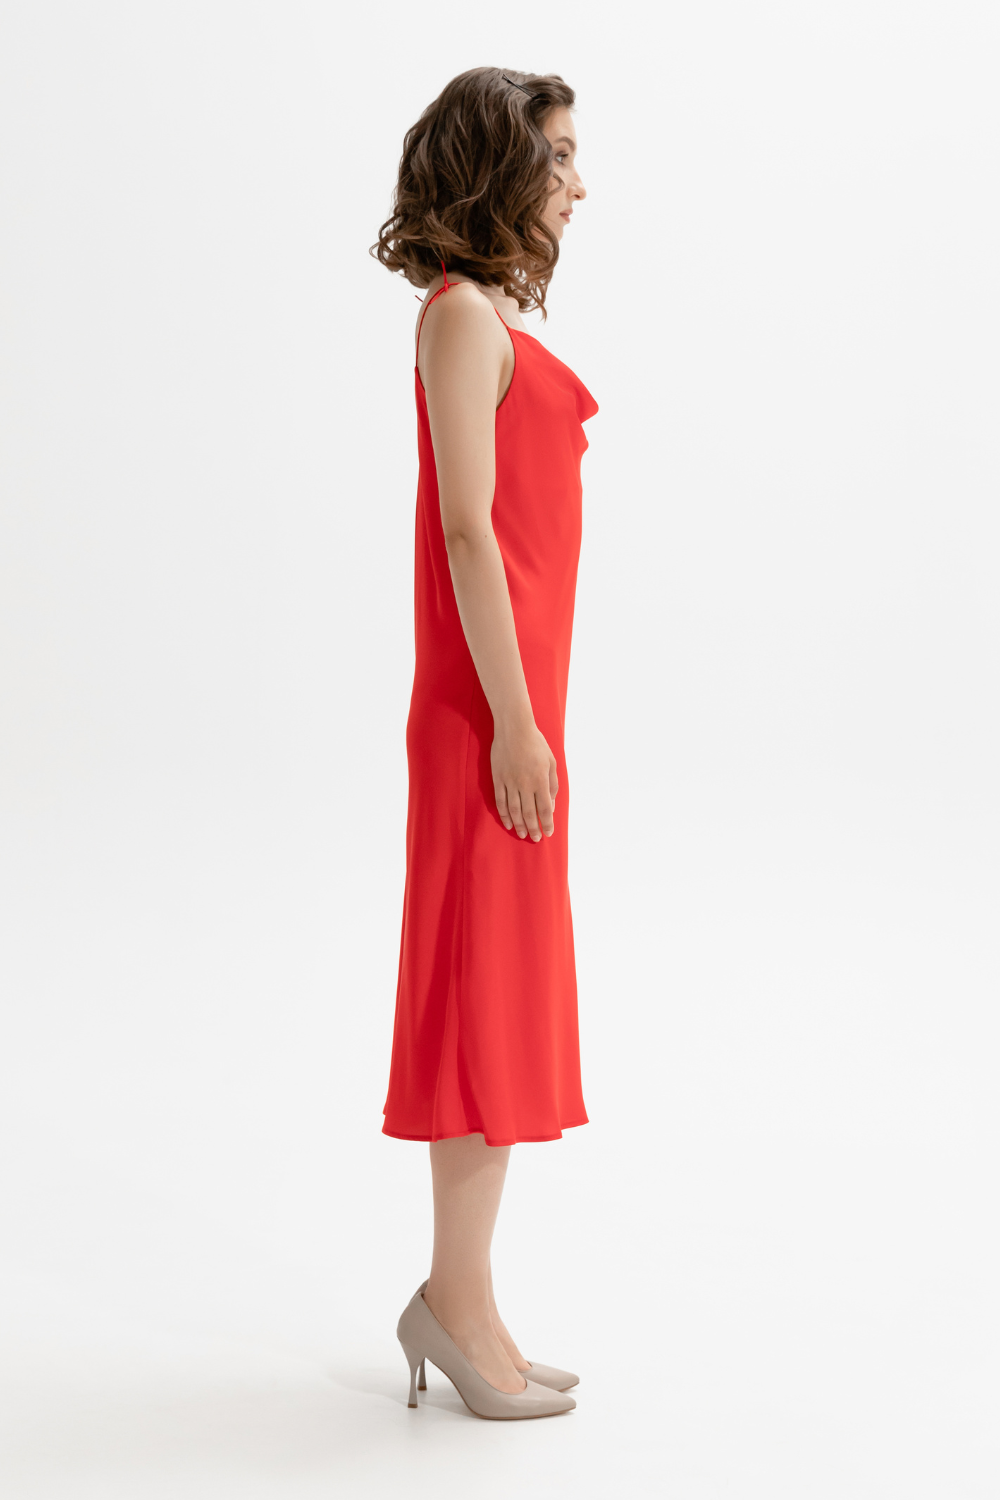 Červené hedvábné šaty s drážkou v oblasti dekoltu (L) (Mint) 820